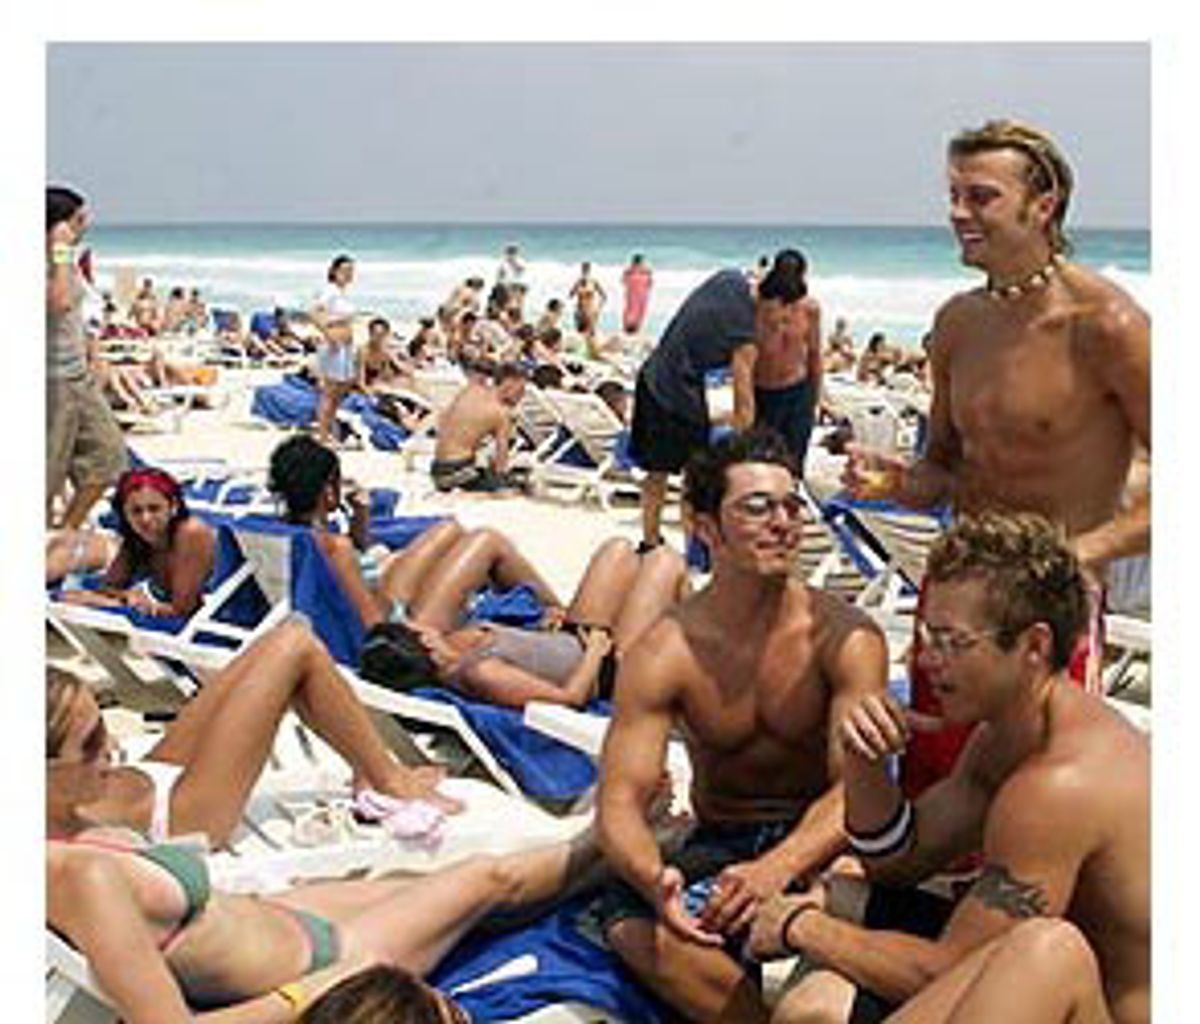 All Ages Topless Beach - Beach blanket bimbology | Salon.com